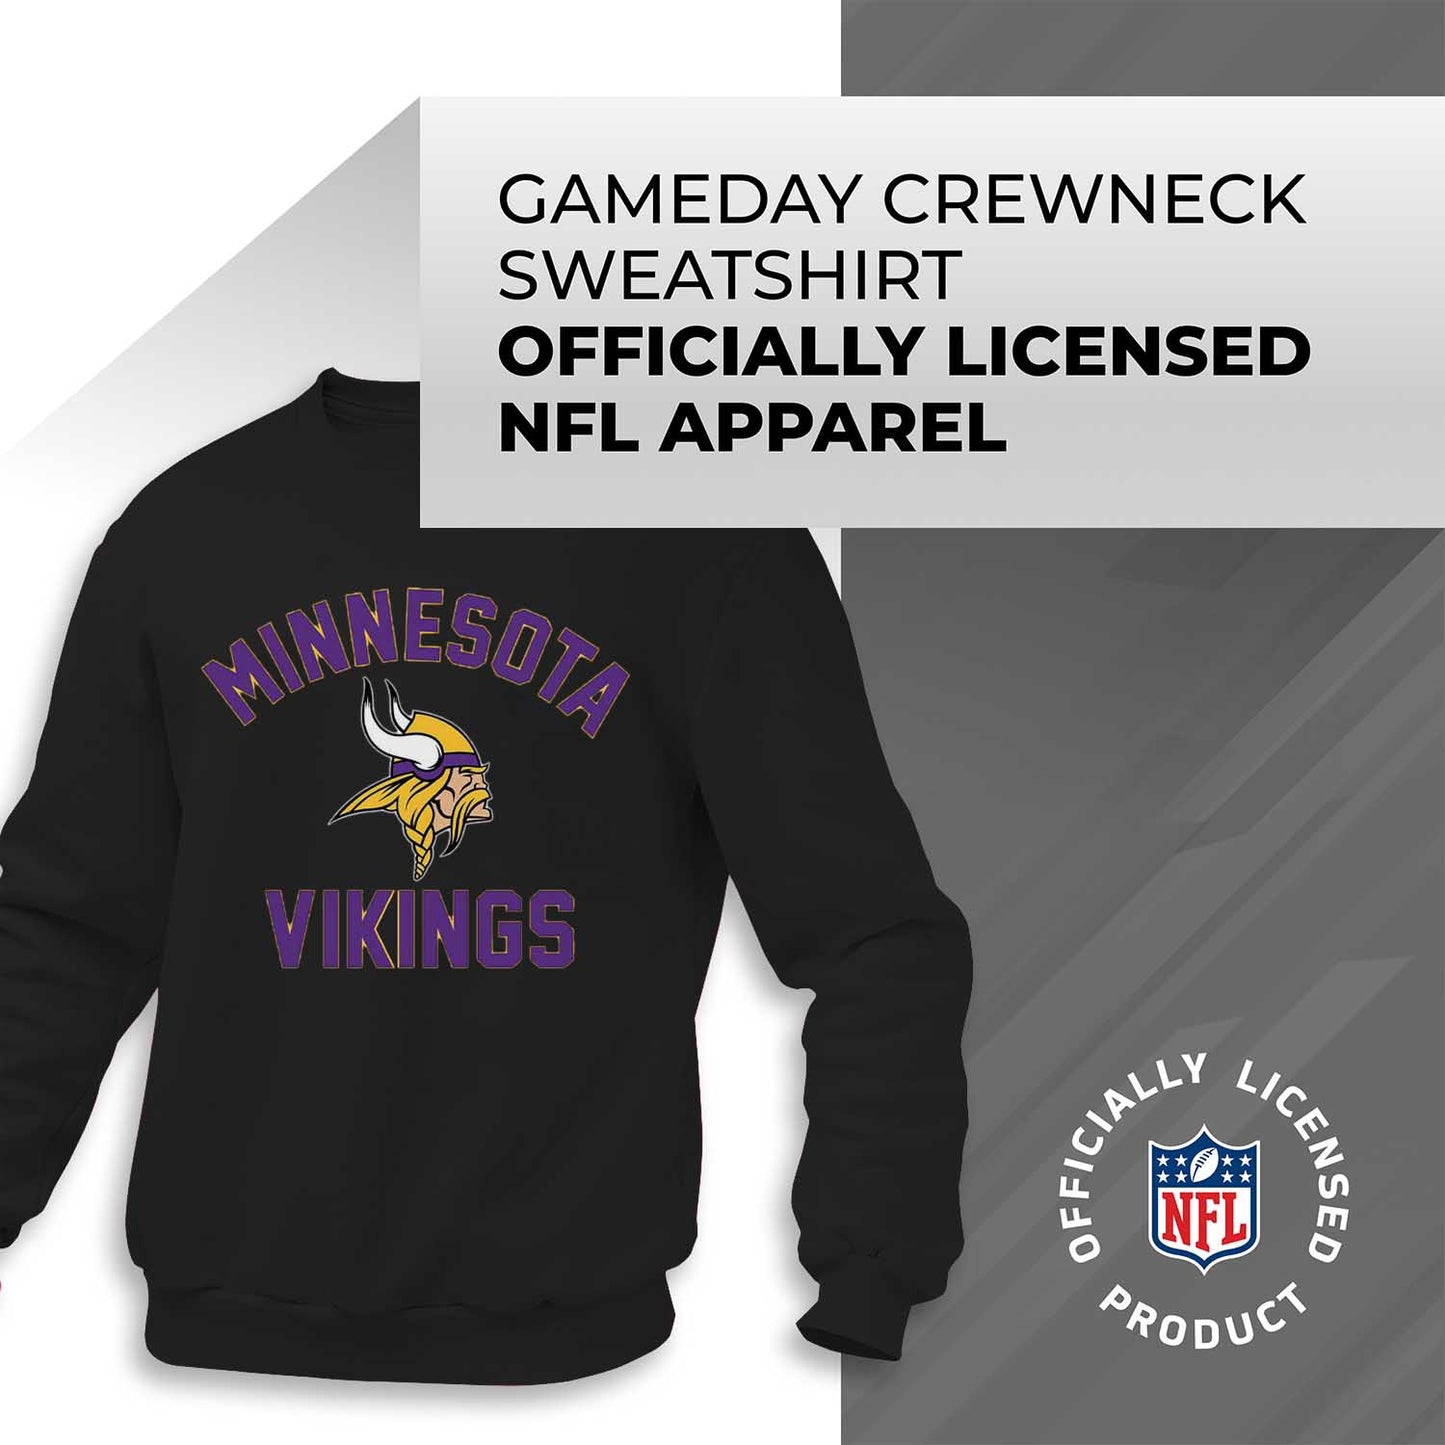 Minnesota Vikings NFL Adult Gameday Football Crewneck Sweatshirt - Black